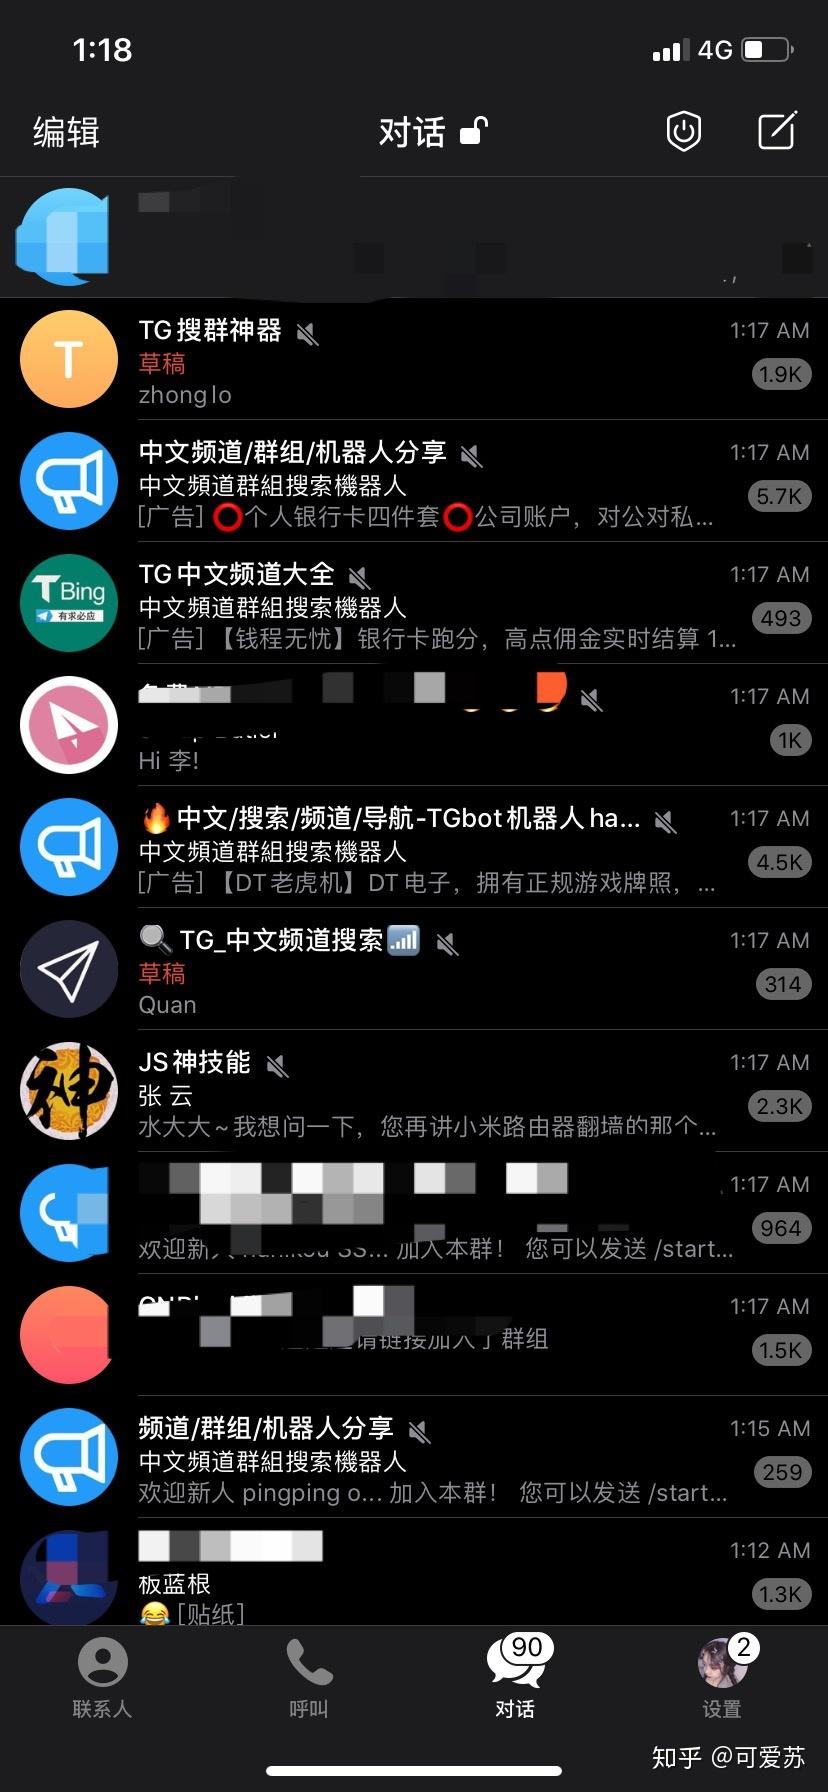 [纸飞机聊天中文系统tg]给大家分享 目前拥有8000多万粉丝